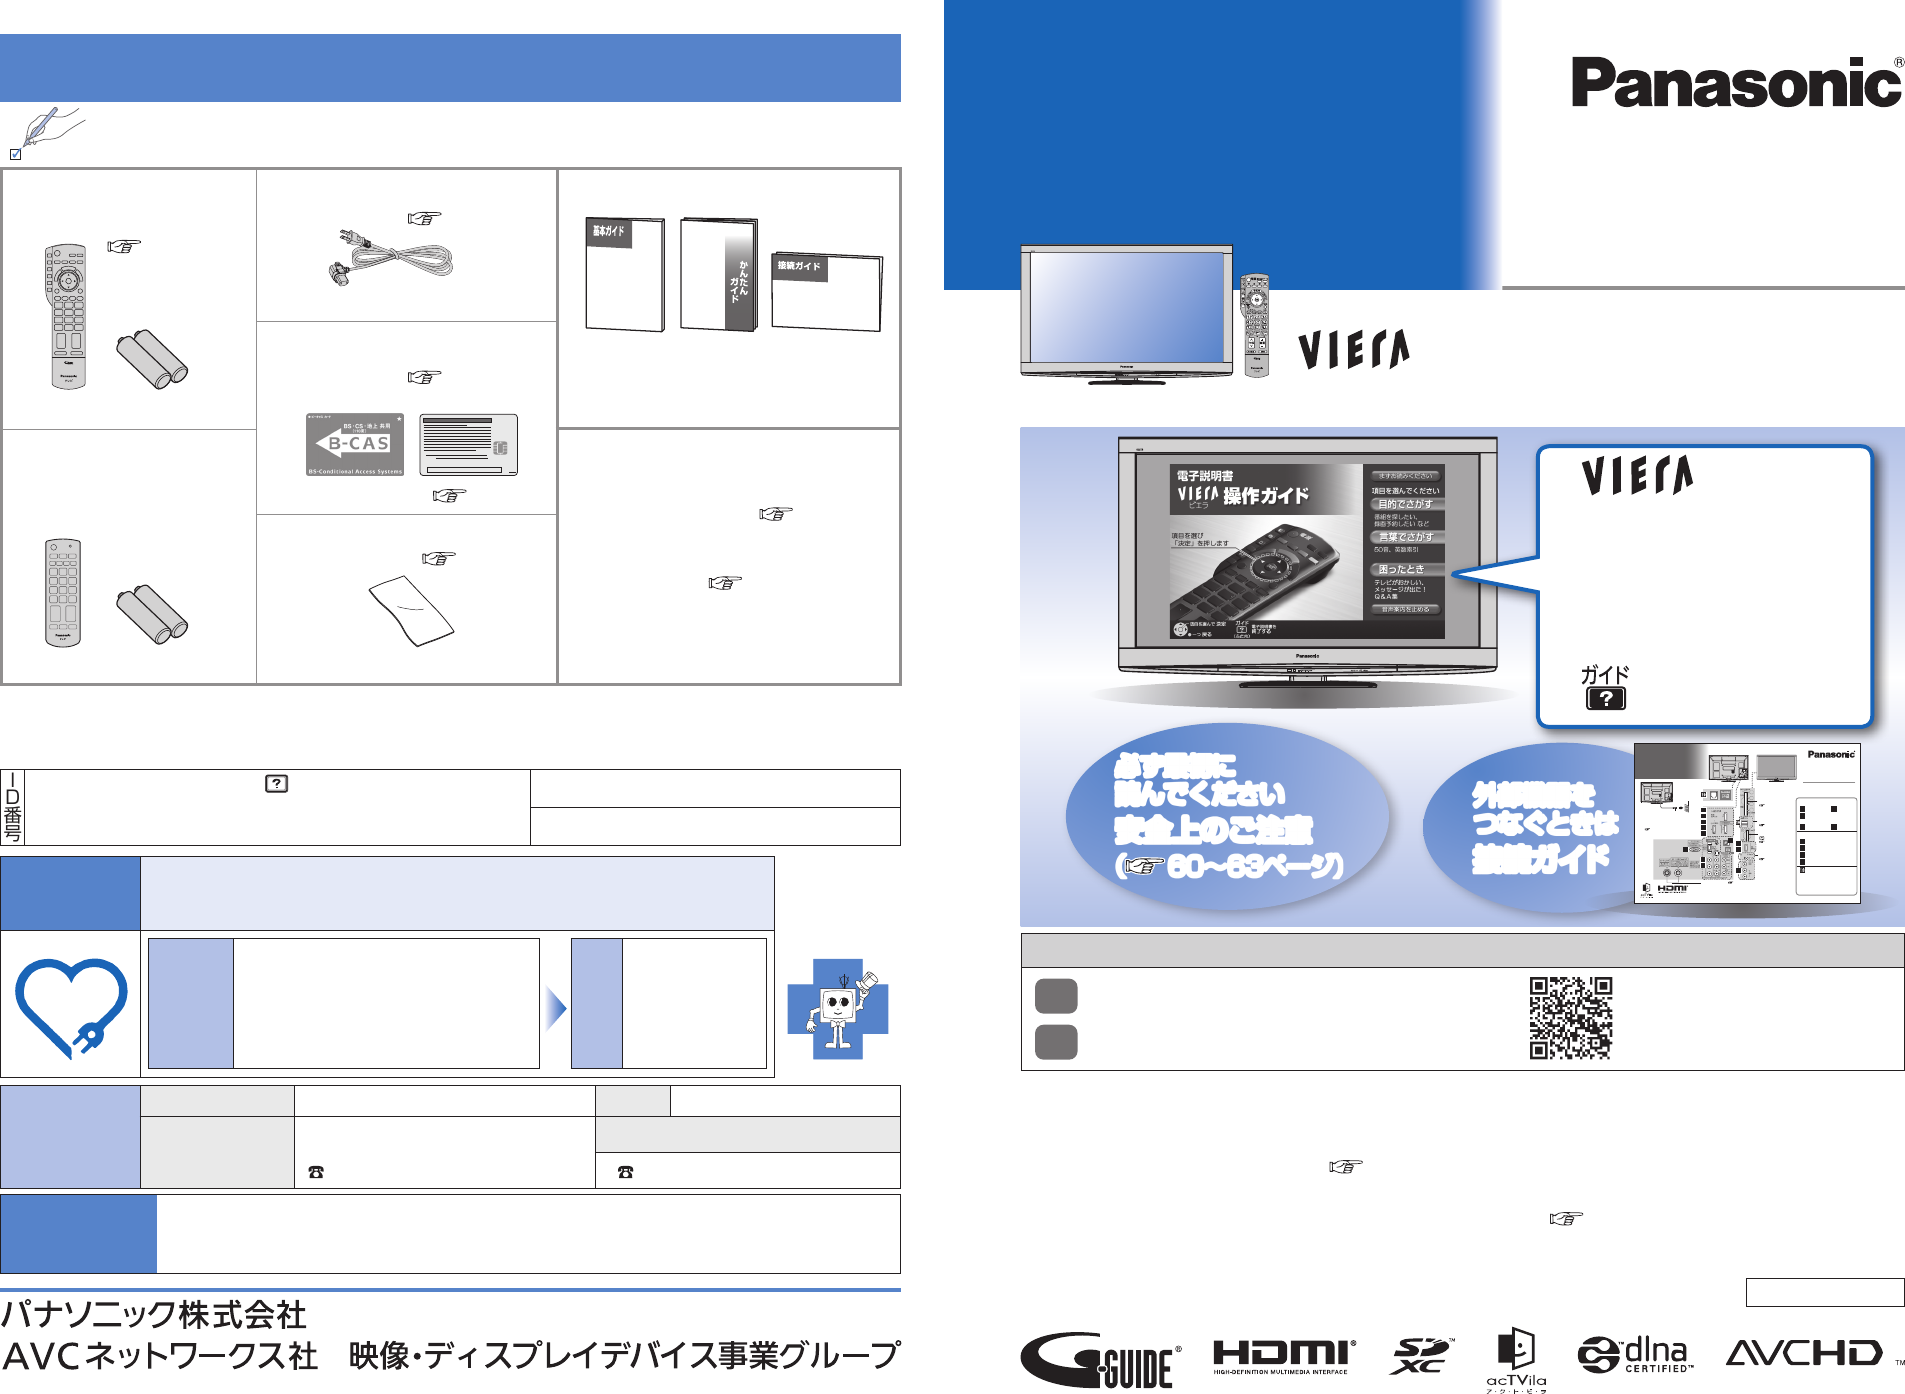 Panasonic ハイビジョンプラズマテレビ 42型 取説・接続ガイド・B-CAS 